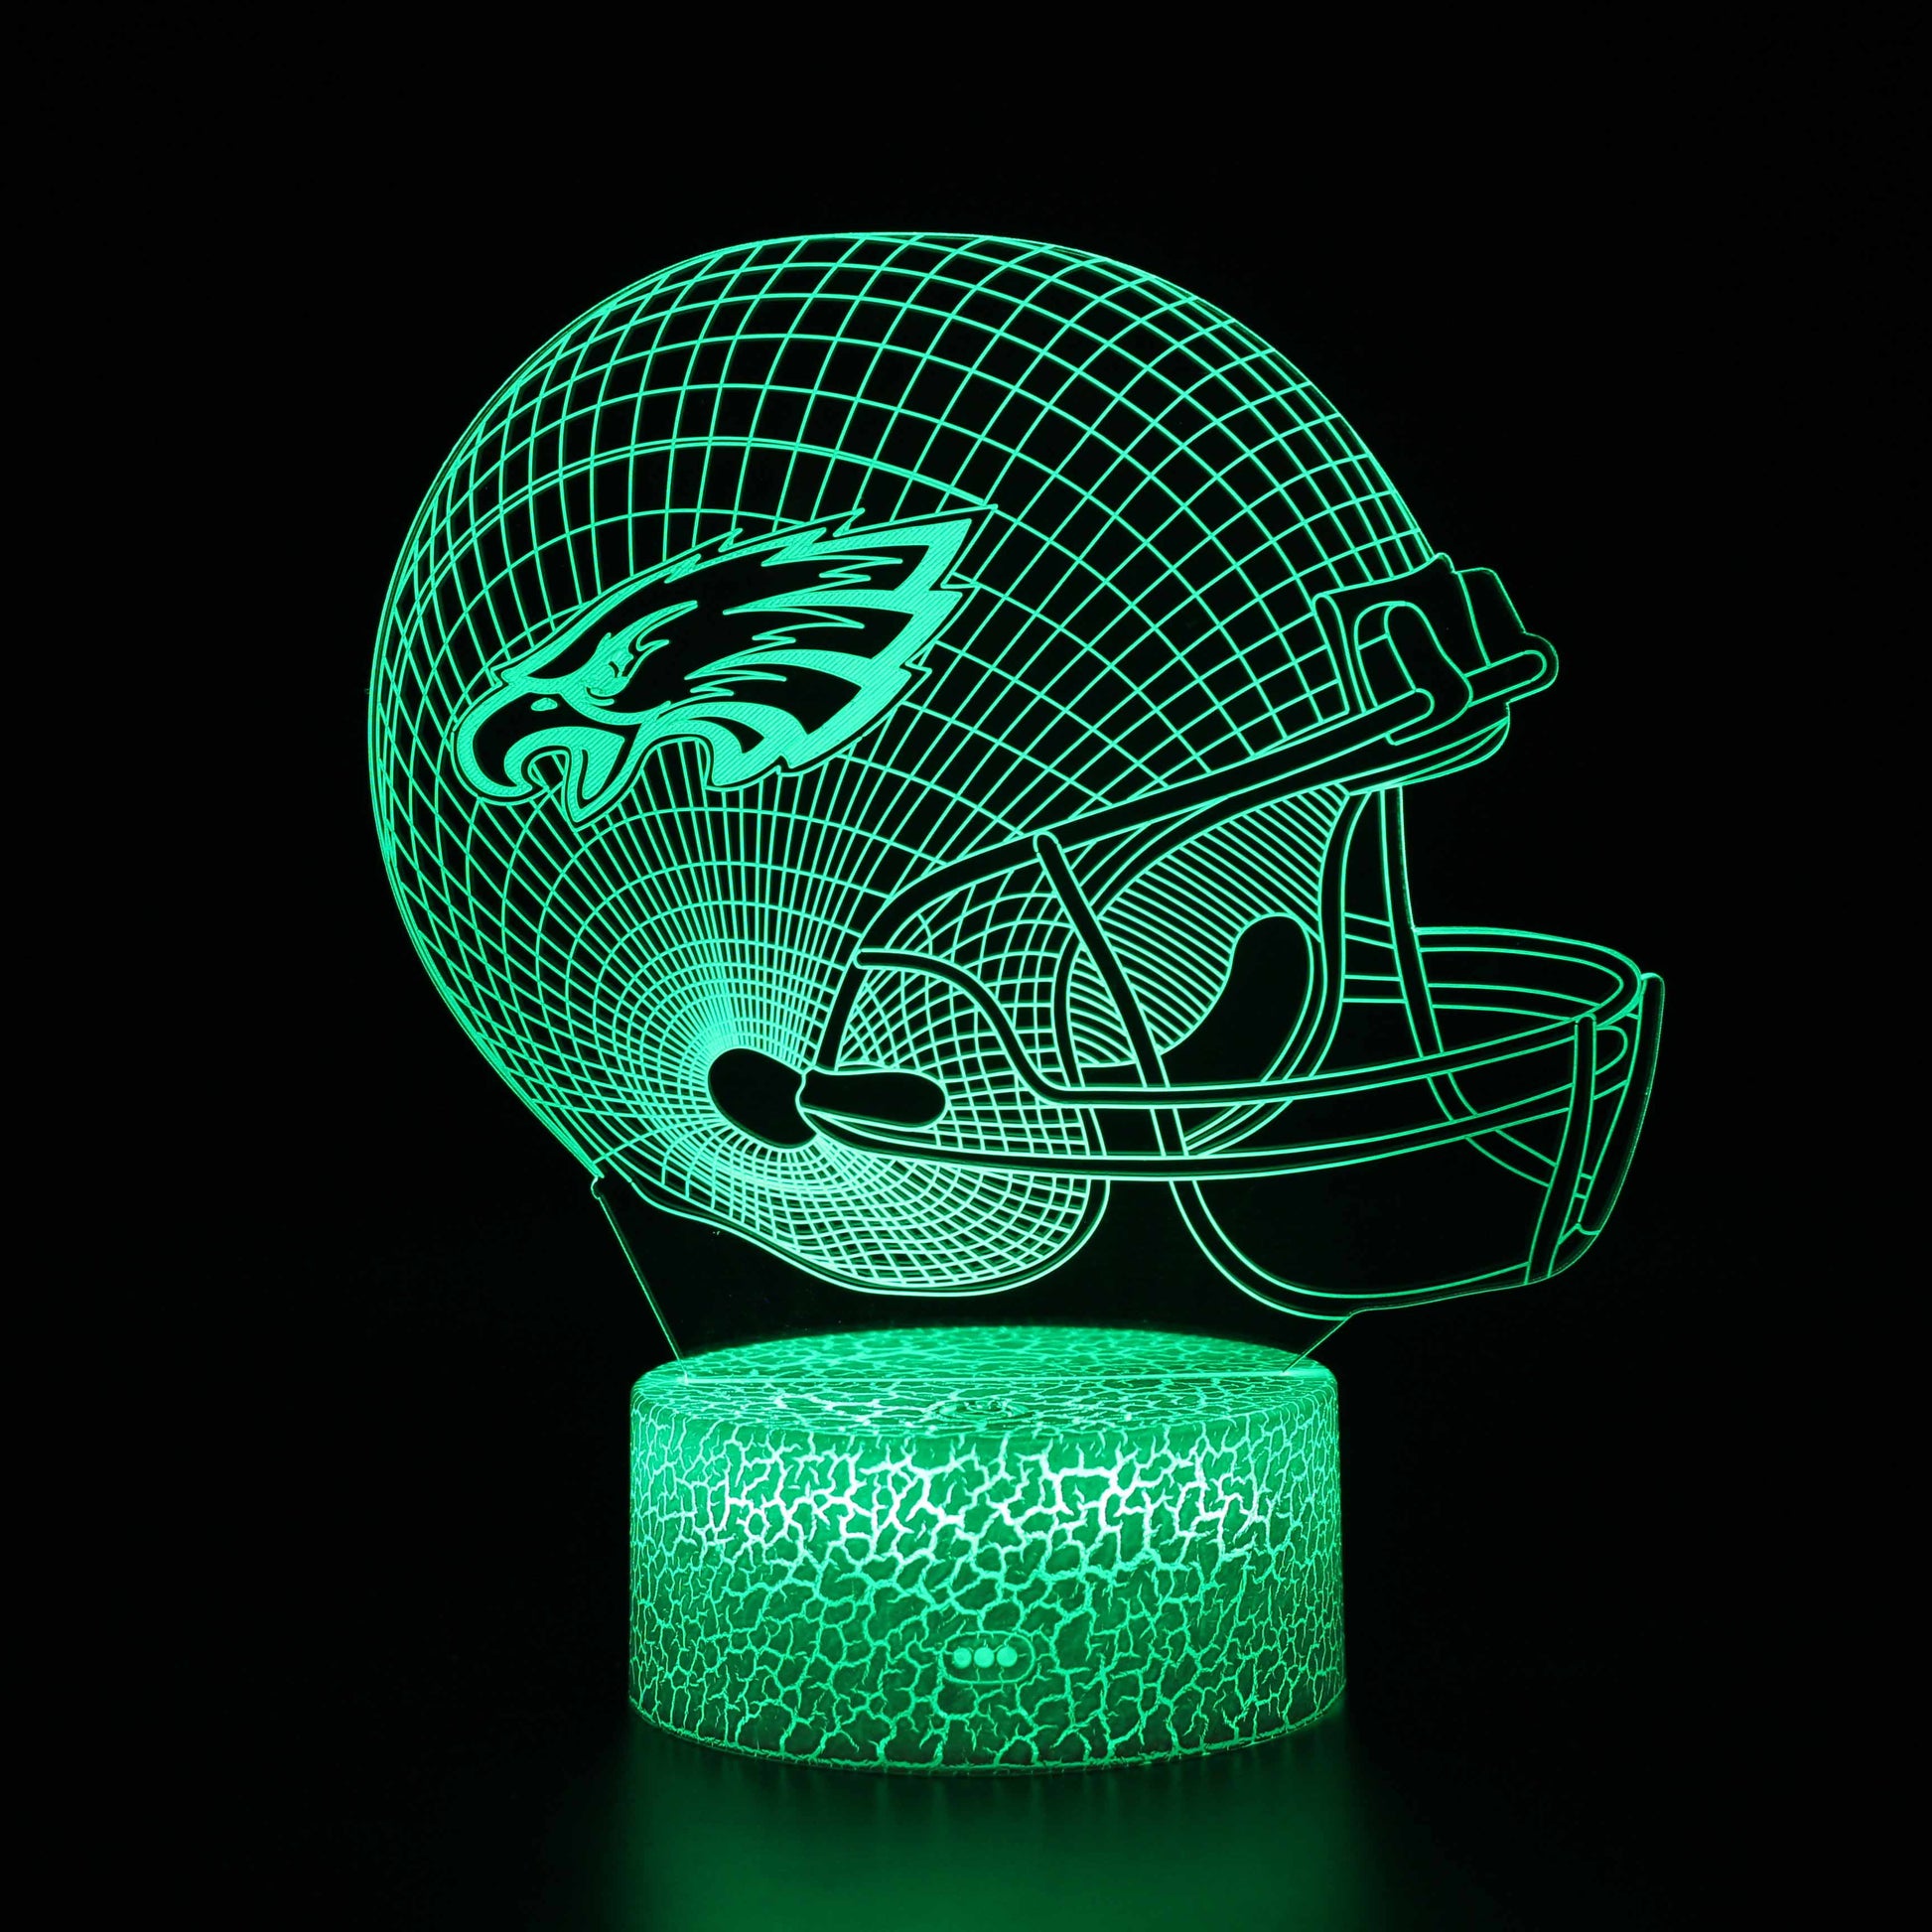 Philadelphia Eagles NFL Football Helmet 3D Night Light